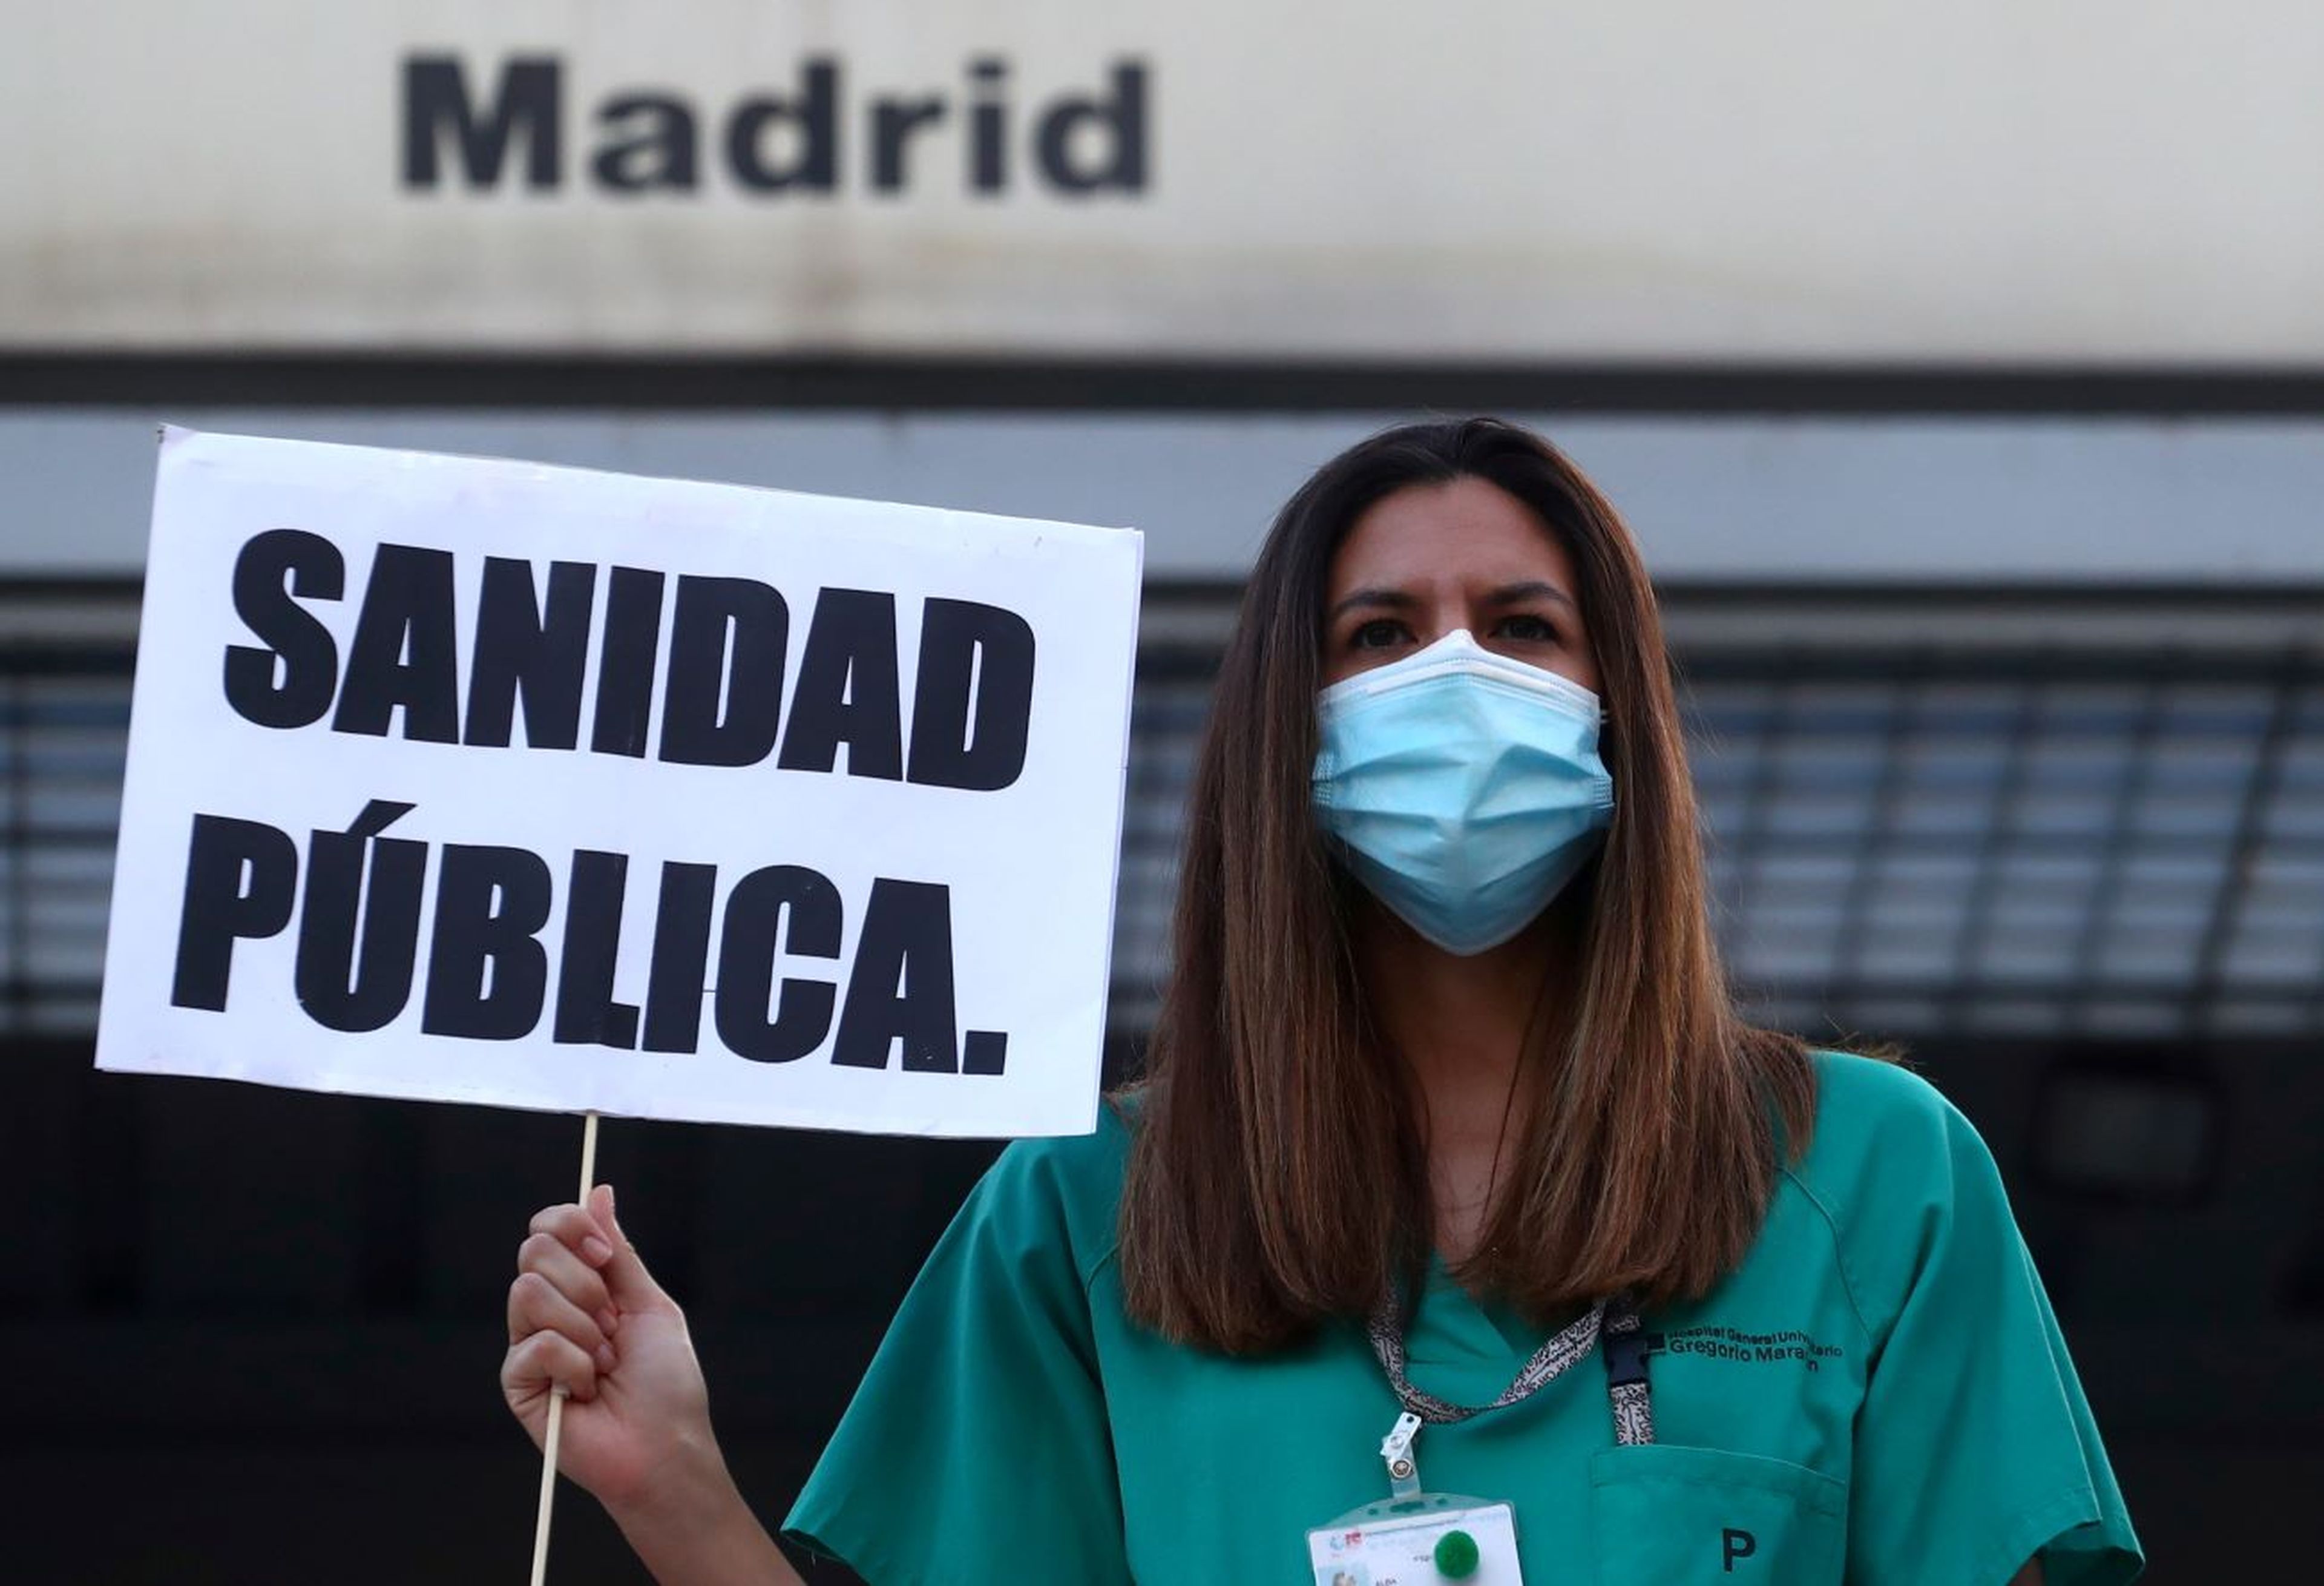 Médica, Sanidad Pública, Madrid, protesta